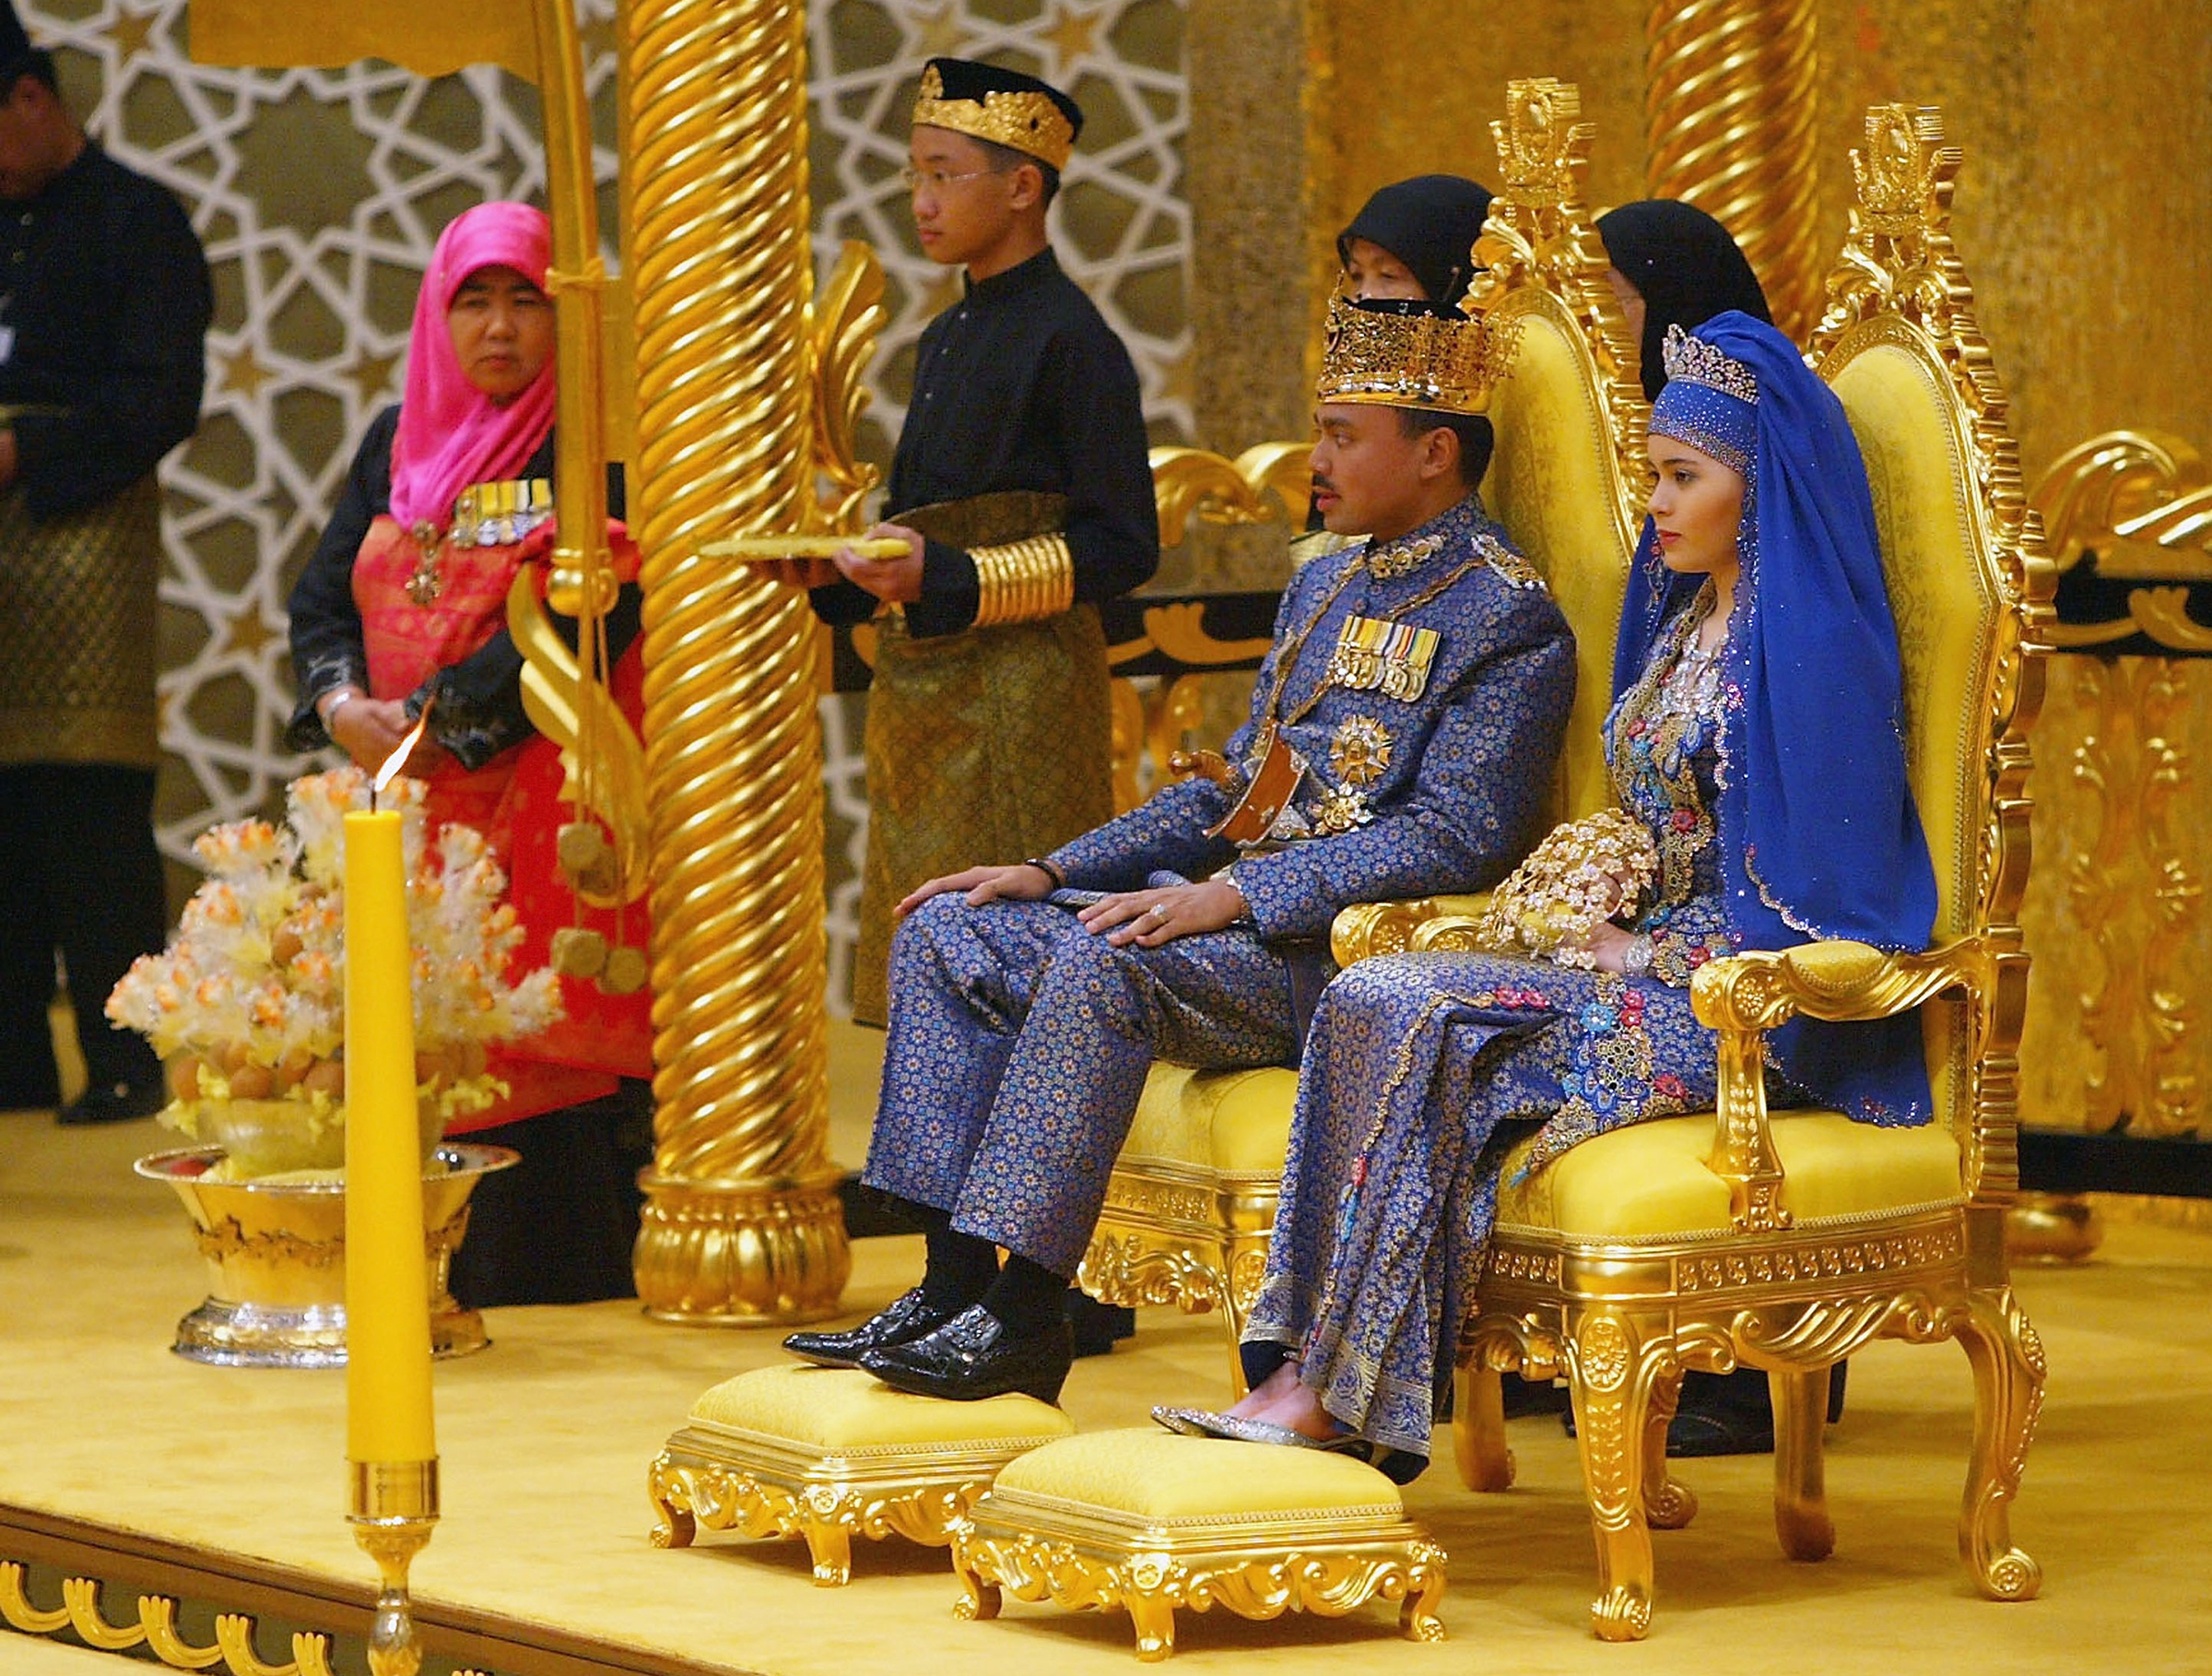 В 2004 году наследный принц Брунея Аль-Мухтади Билла женился на 17-летней дочери швейцарской медсестры и брунейского подданного Саре Пенгиран Саллех. На свадьбу были приглашены 2 тыс. гостей, но непосредственно церемония проходила в тронном зале дворца в присутствии 500 избранных.

Стоимость церемонии оценивали в $5 млн, причем отмечалось, что сумма это по местным меркам очень скромная. Объяснялось это финансовым кризисом, который вызвала растрата братом султана Хассанала Болкиаха $16 млрд государственных денег.
